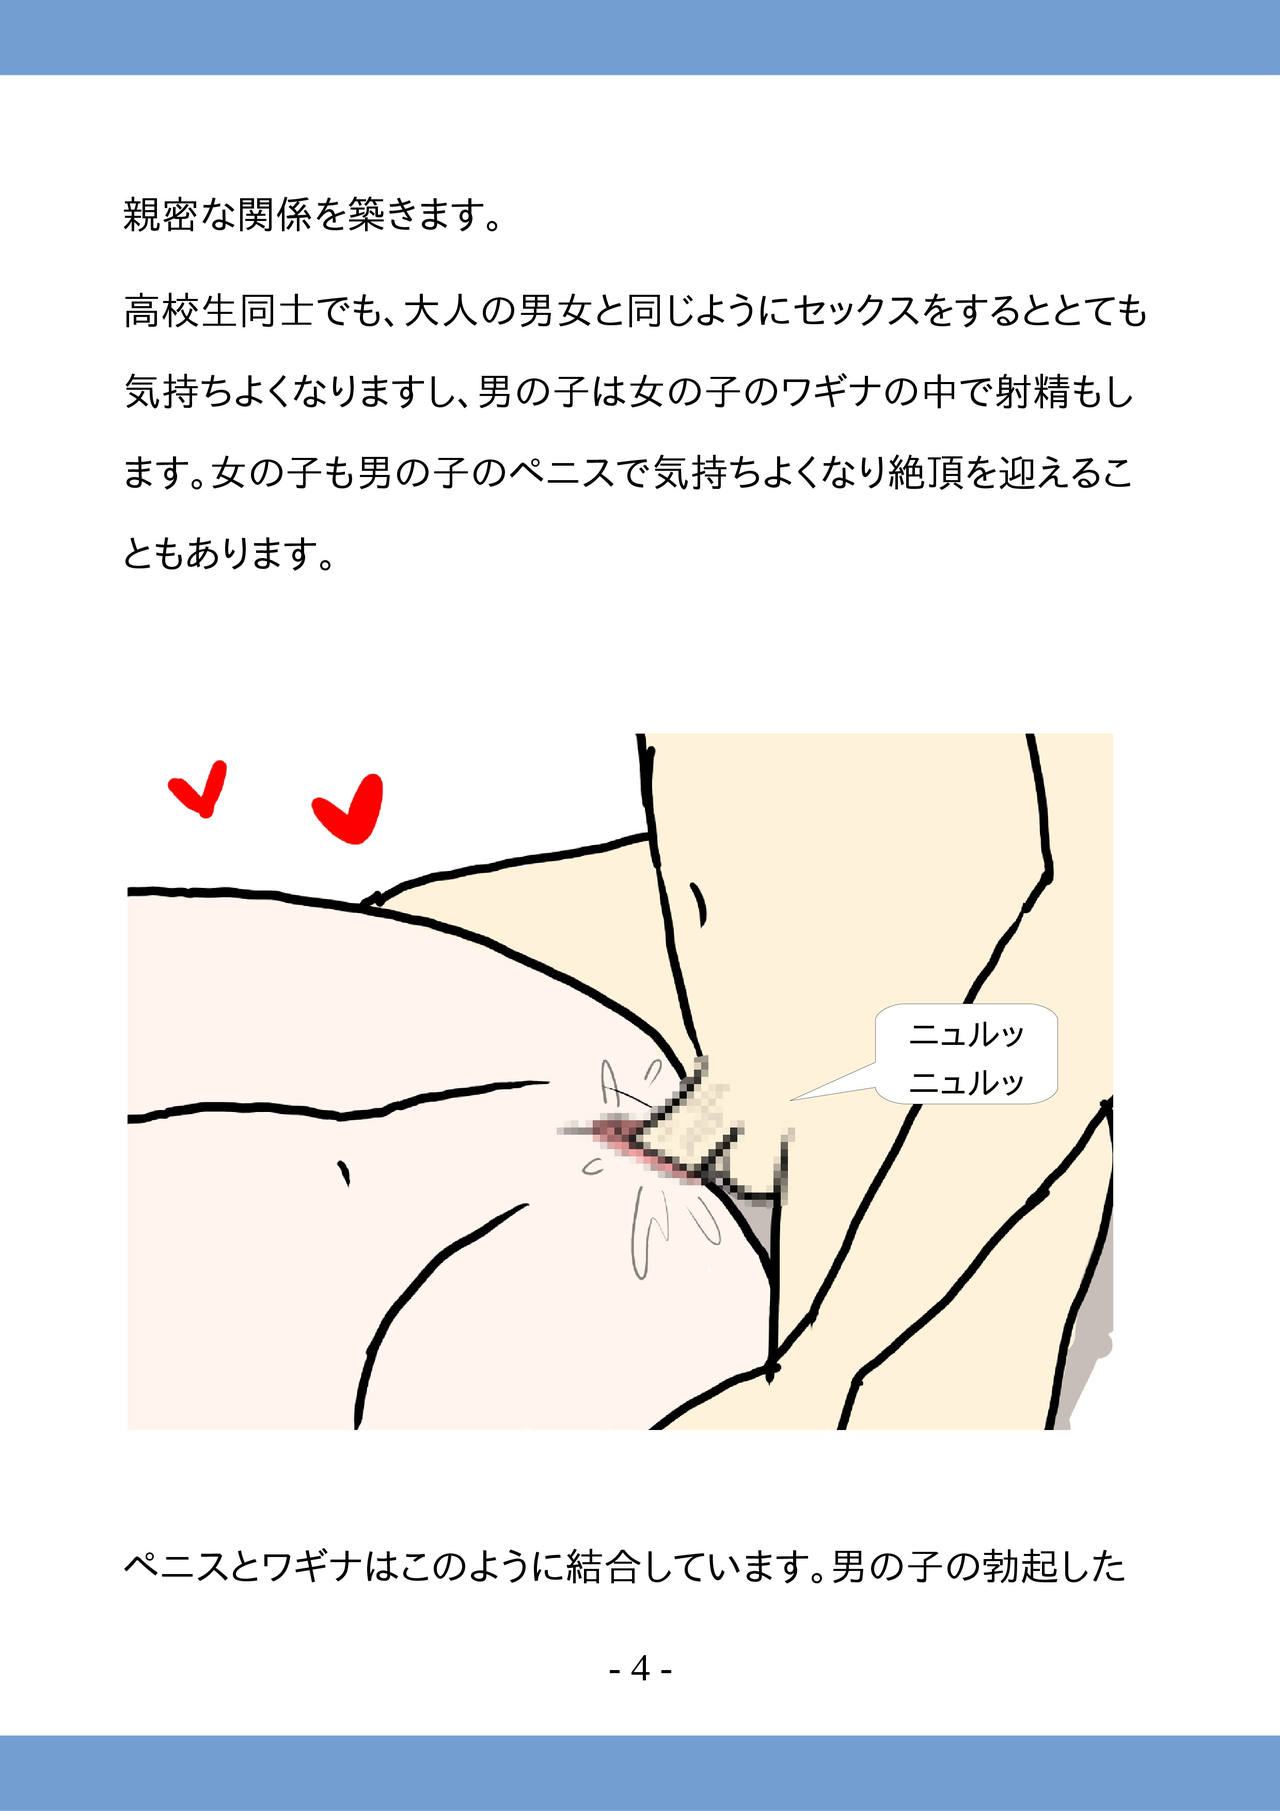 [poza] Koukousei no Tame no Sex Kouza -Koukousei Doushi de no Sex to Ninshin- page 4 full